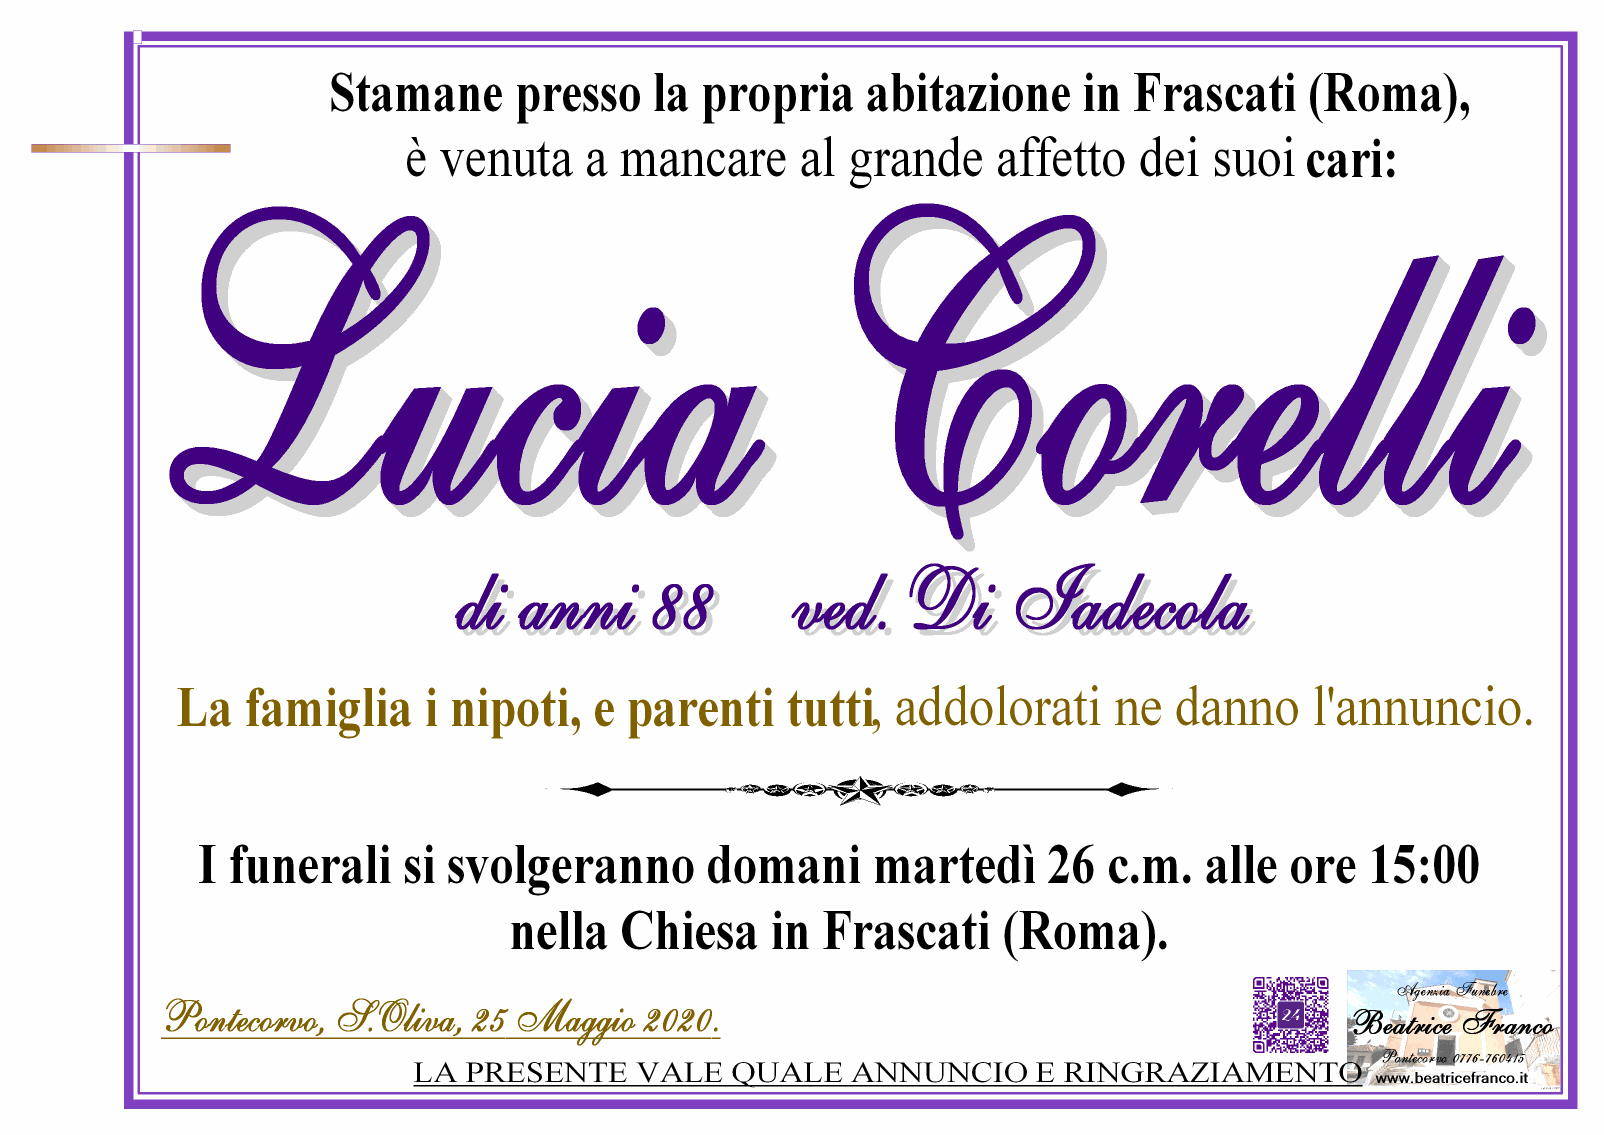 Lucia Corelli